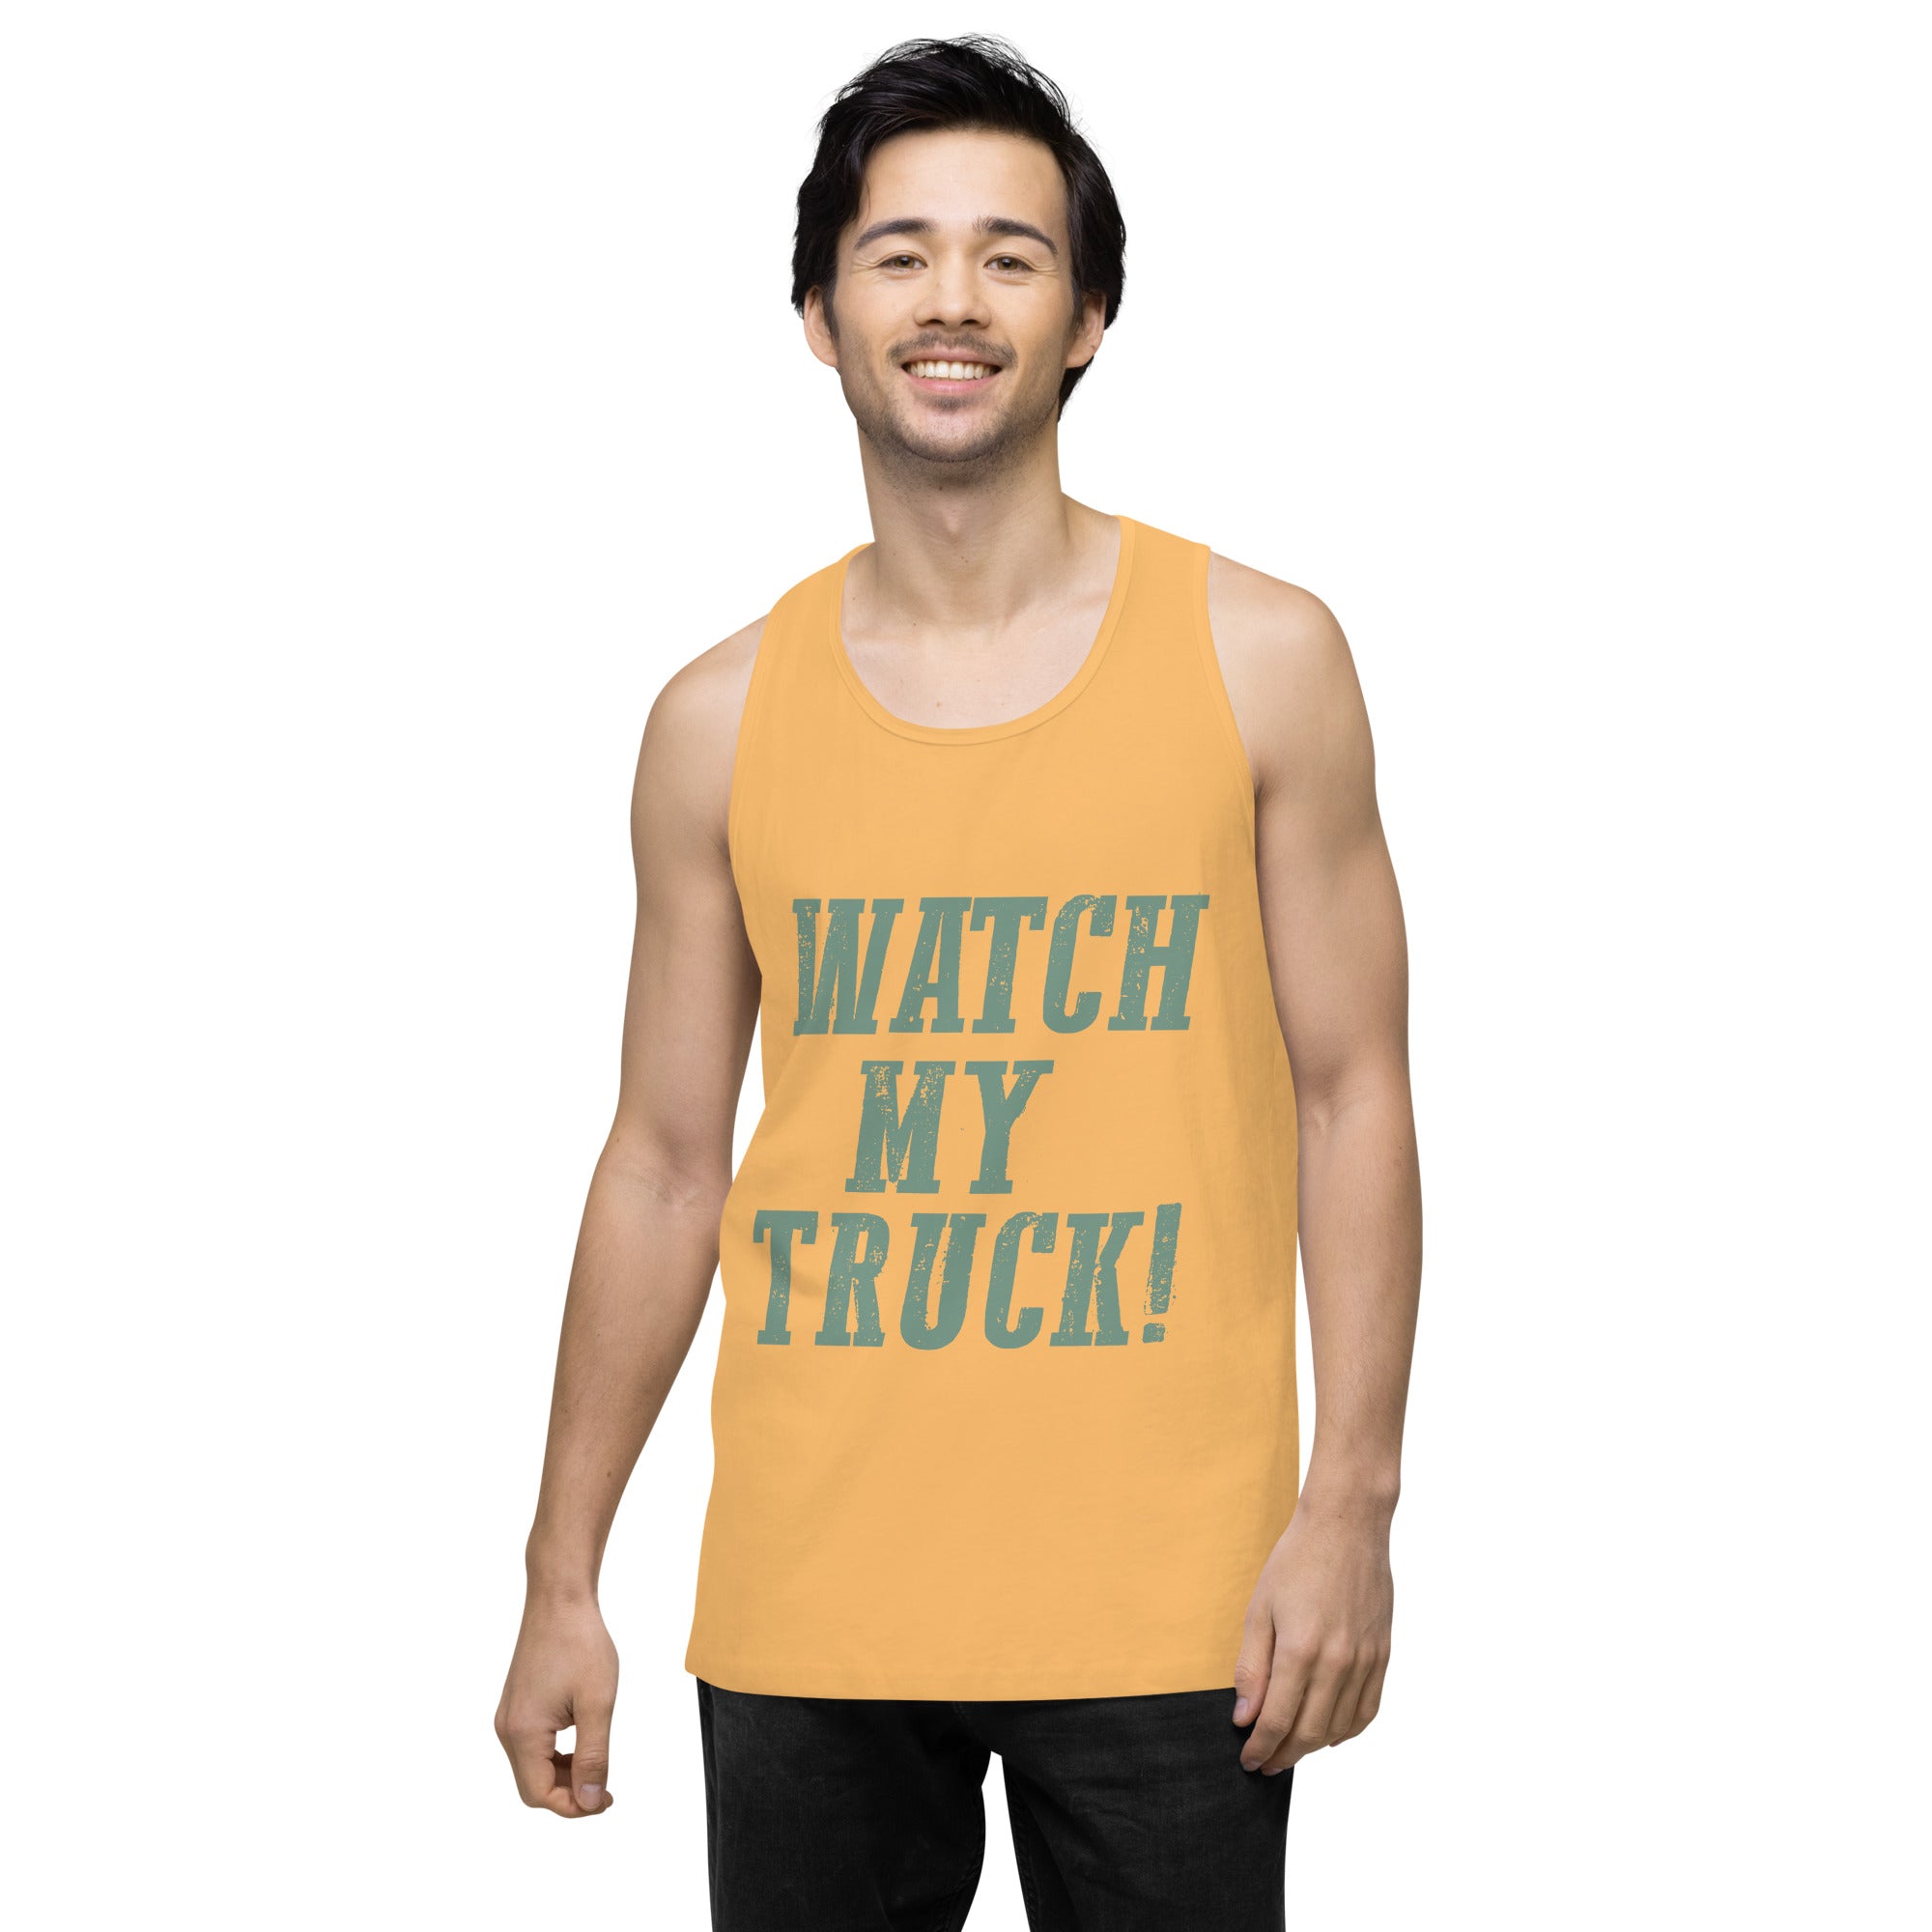 Watch My Truck! Men’s premium tank top